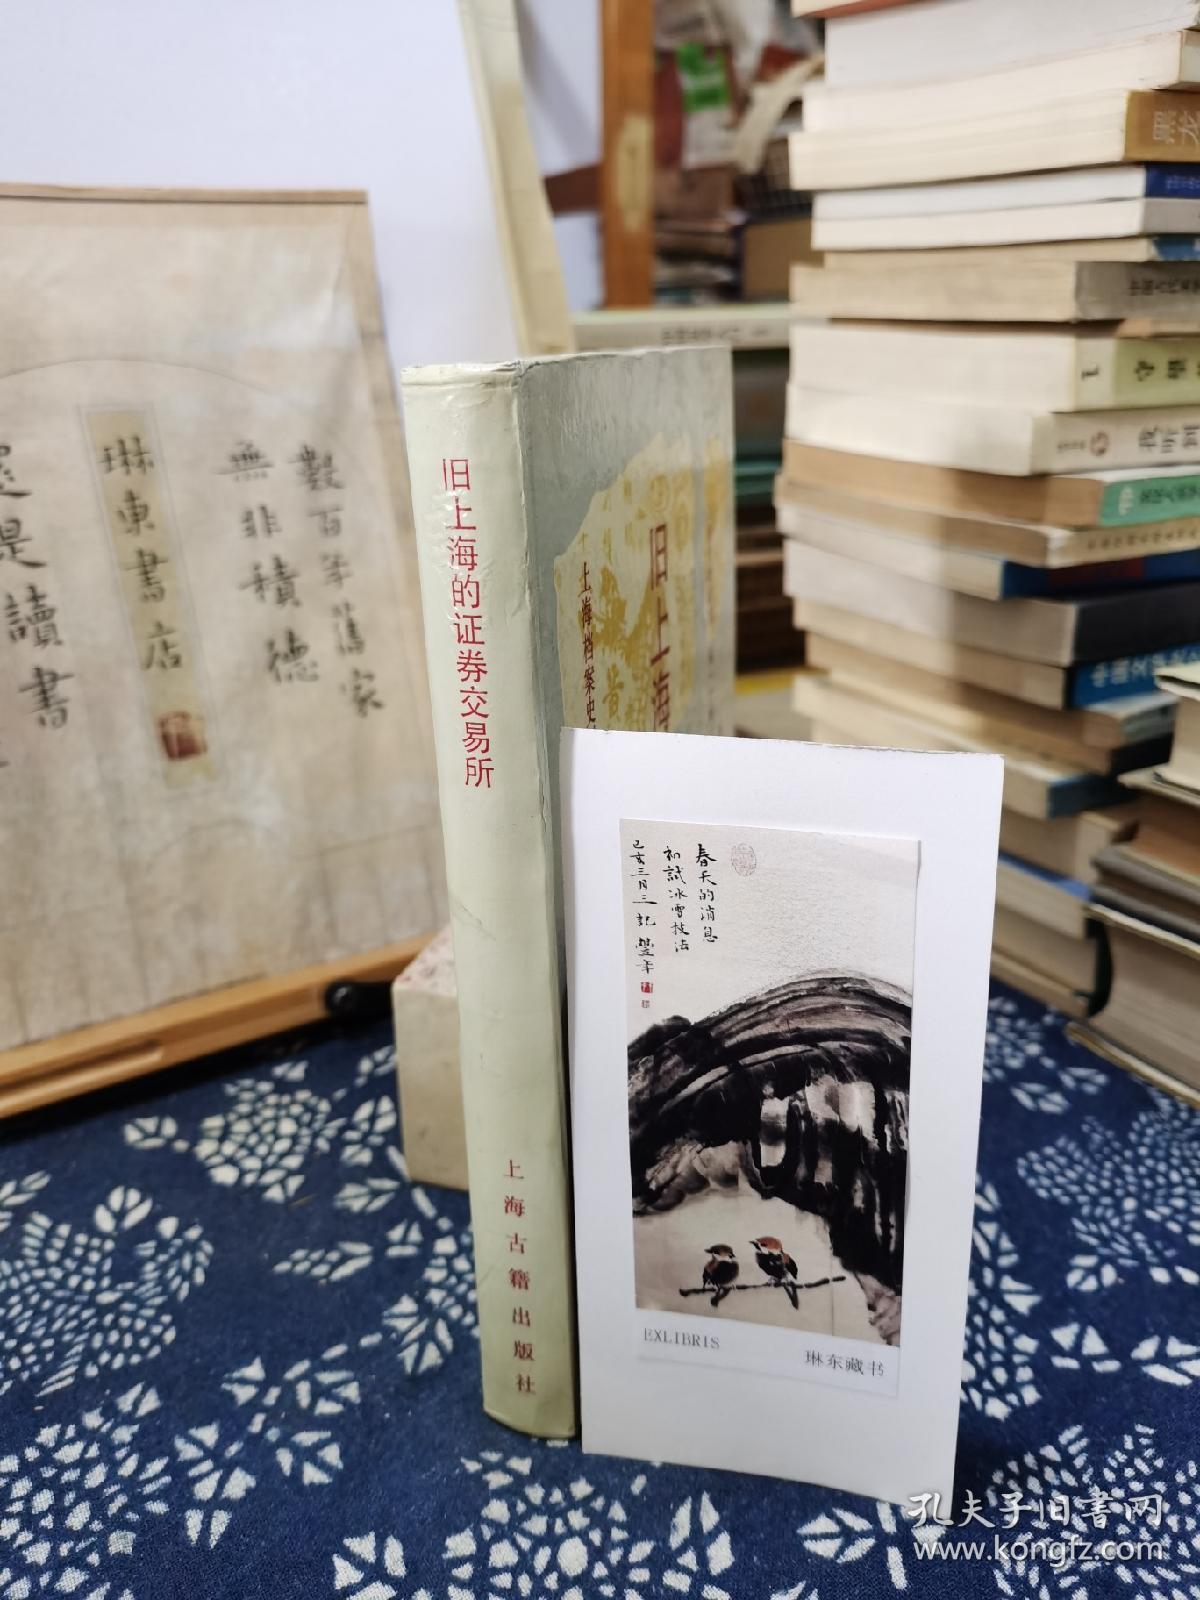 旧上海的证券交易所   92年一版一印   品纸如图   书票一枚   便宜28元